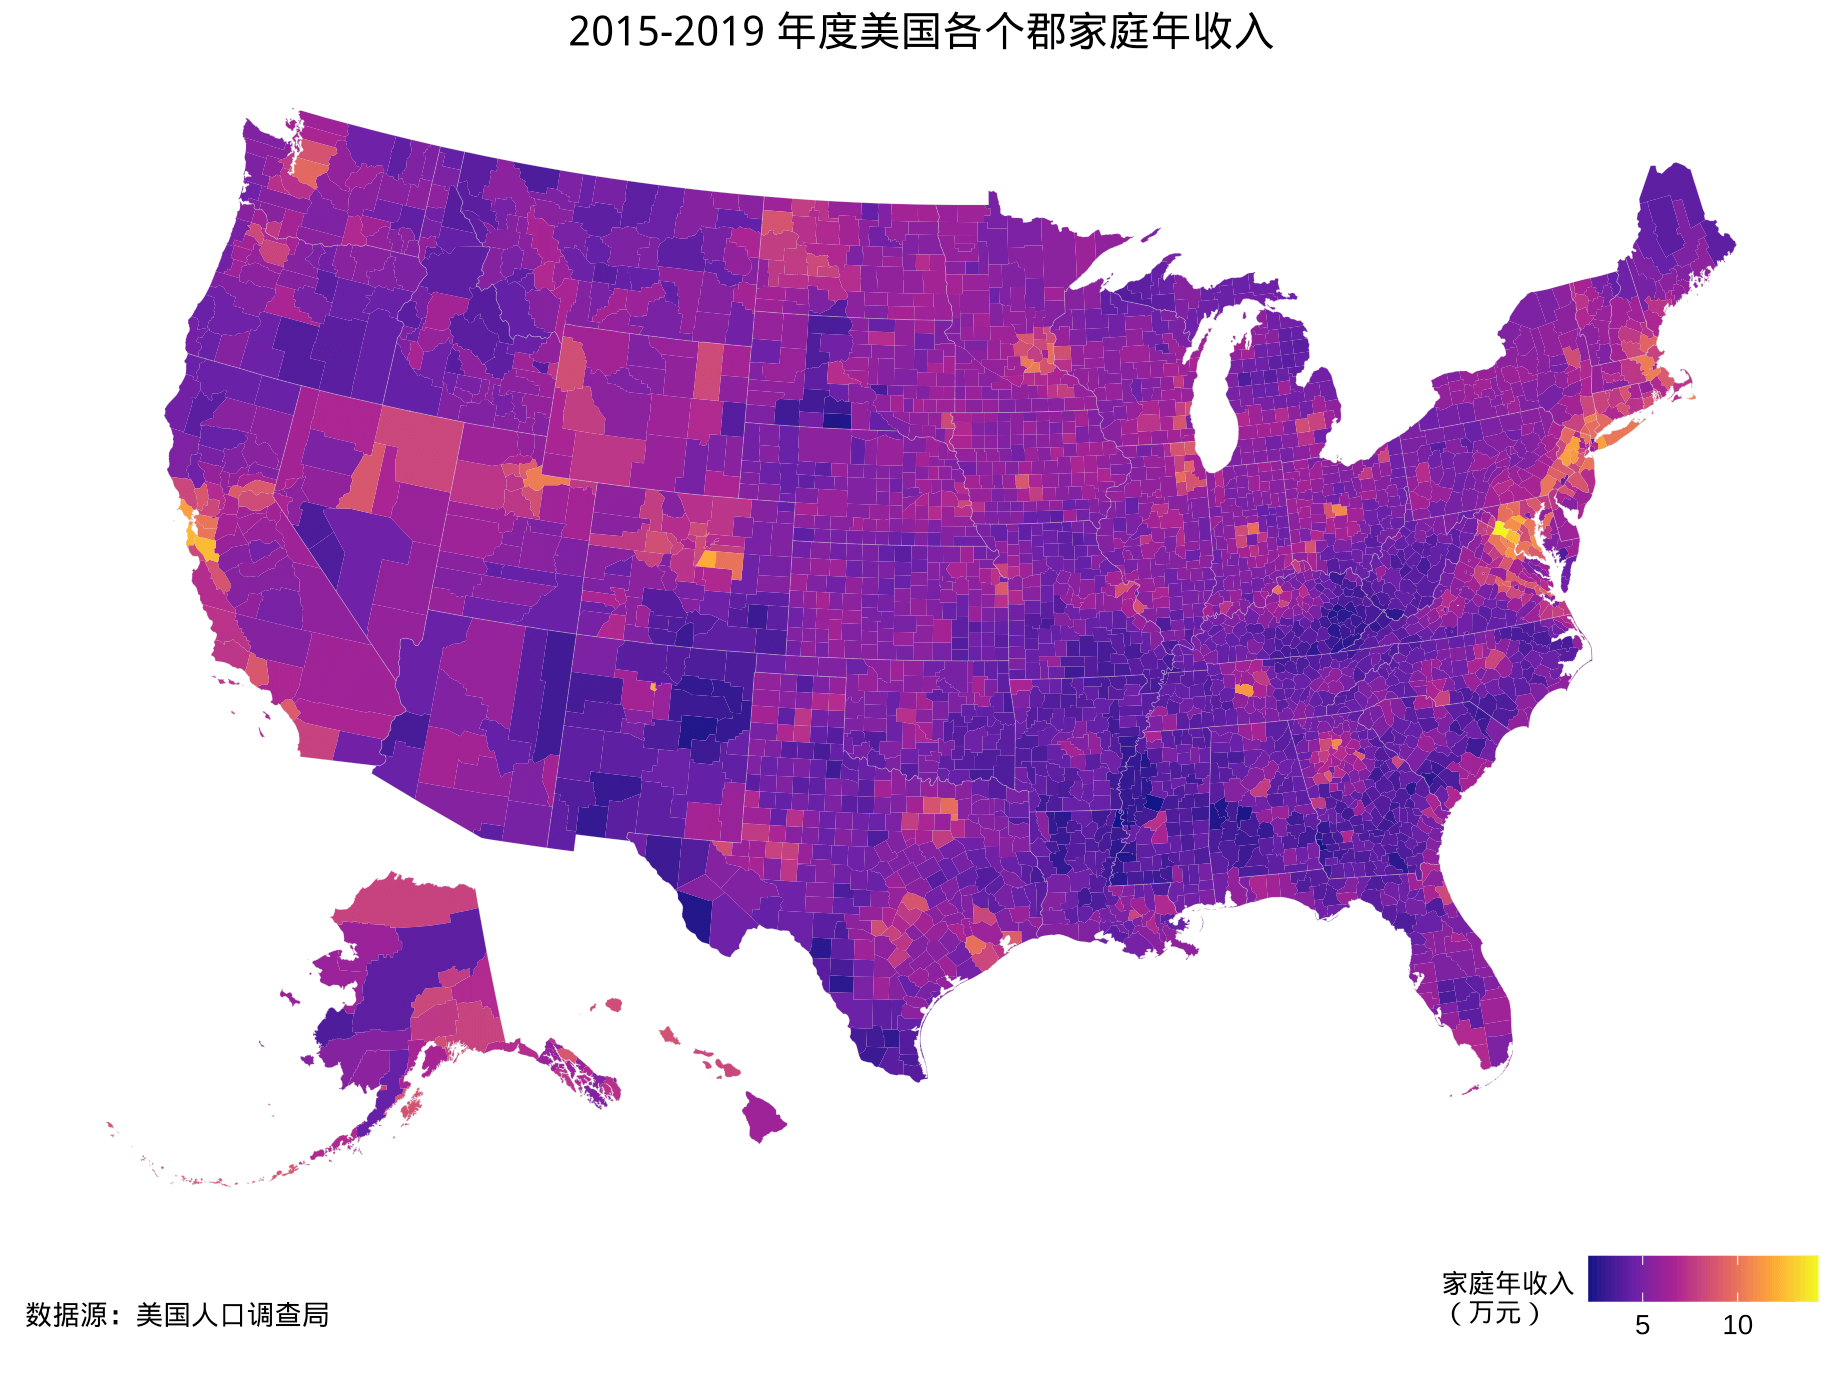 2015-2019 年度美国各个郡家庭年收入